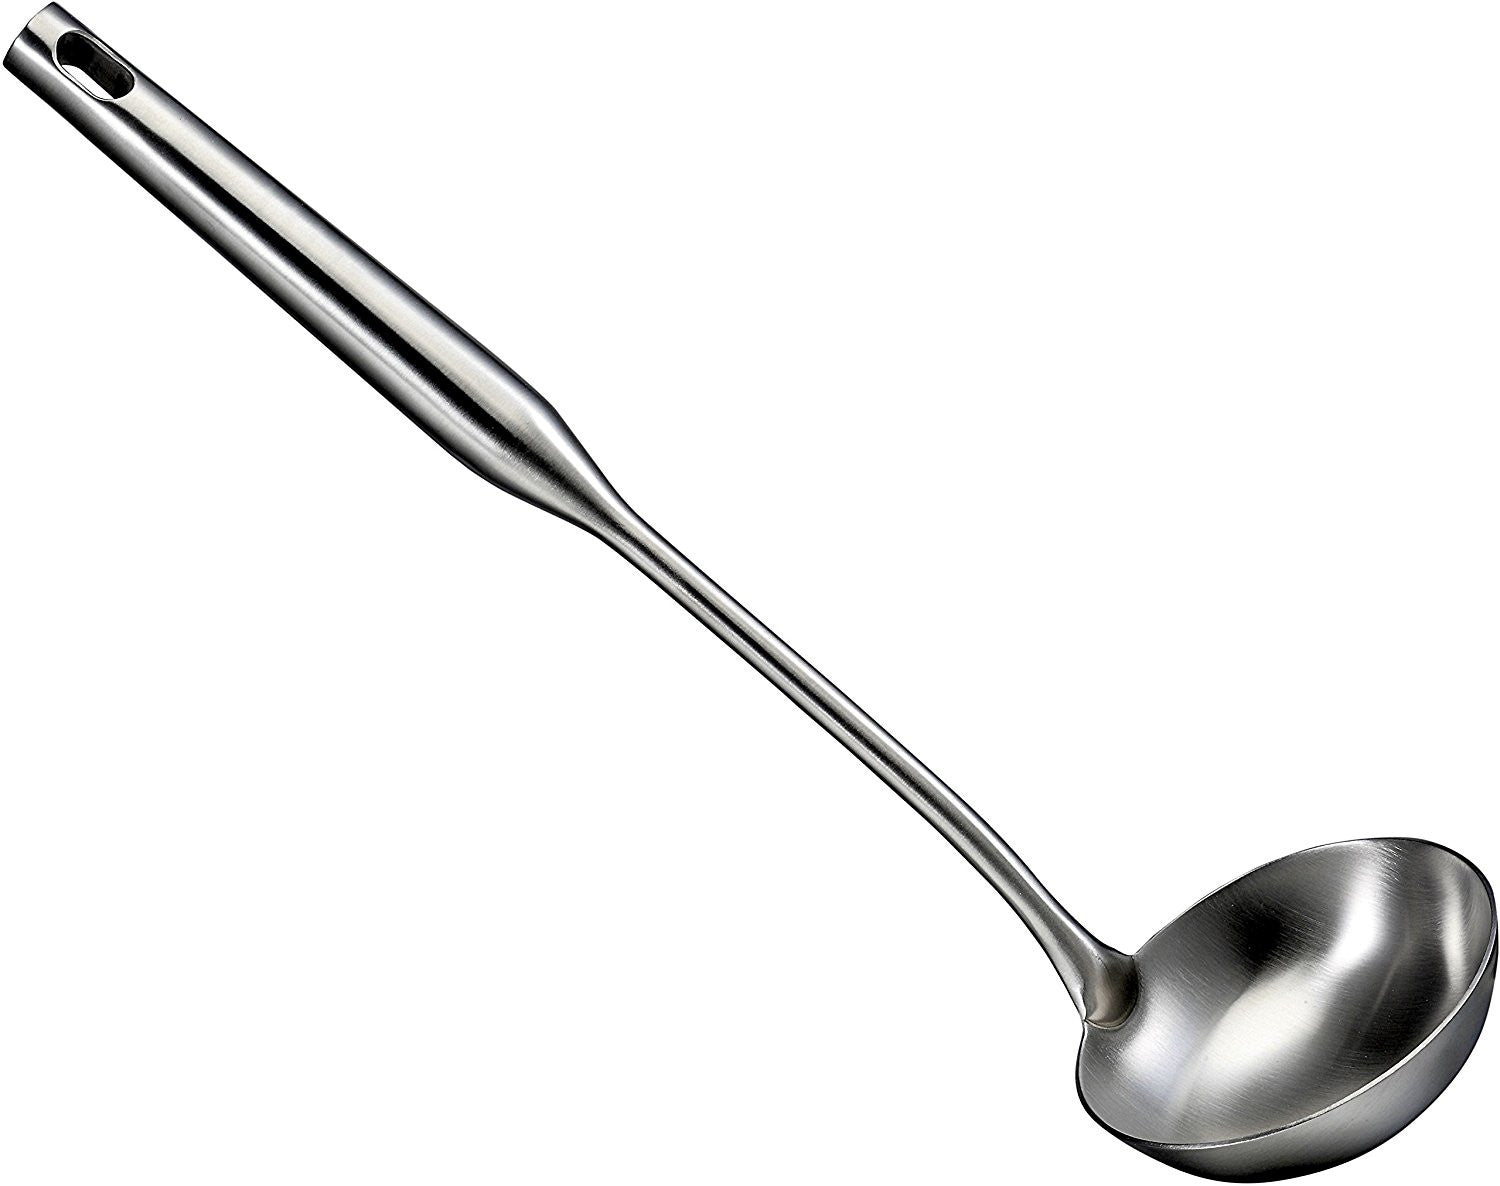 Big Soup Ladle - Kitchen Ladles Spoons – Pro Chef Kitchen Tools